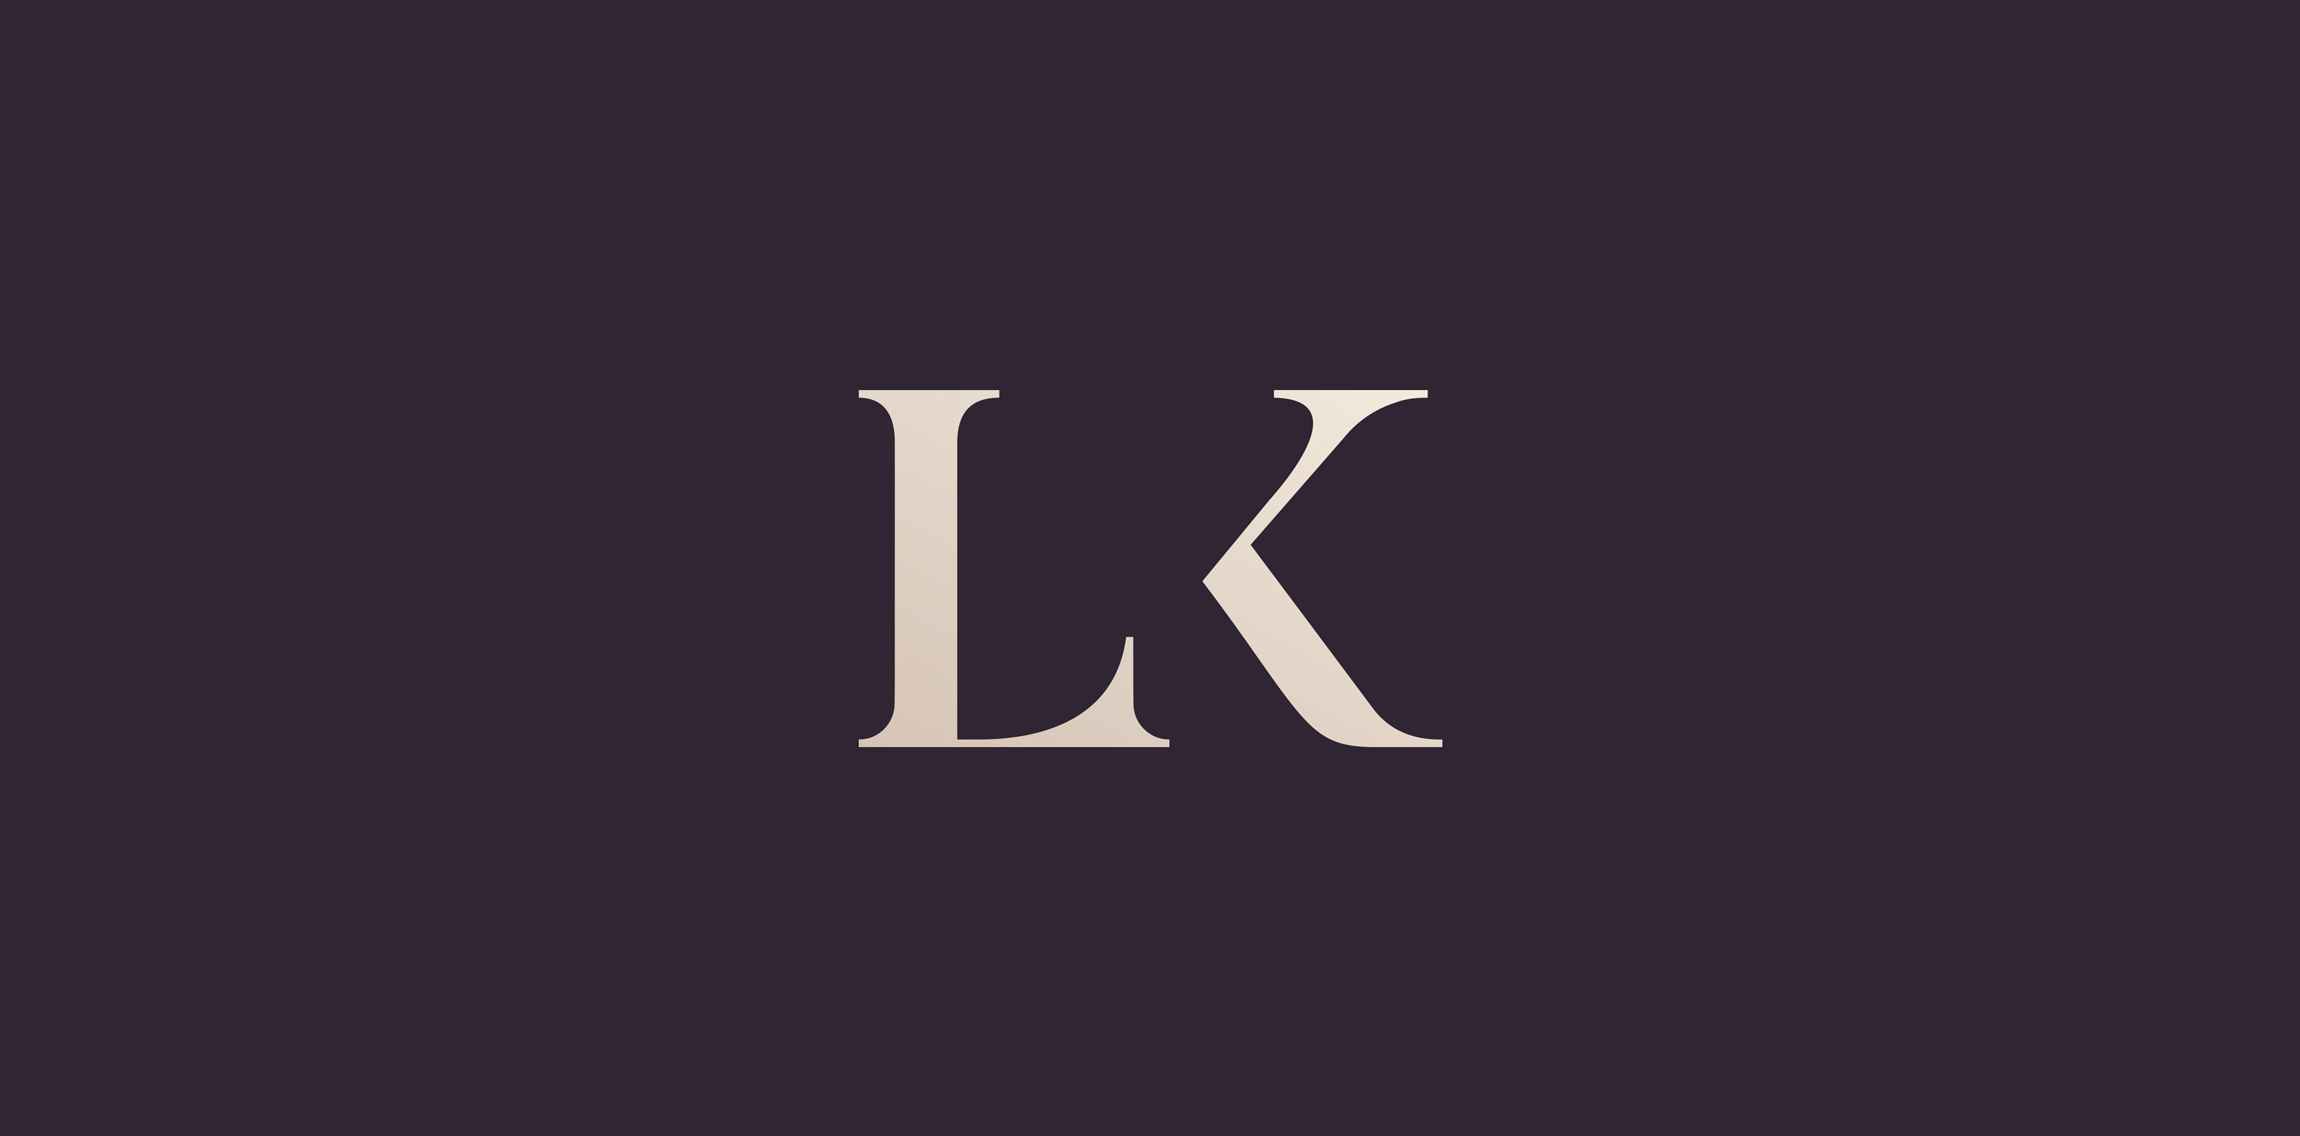 LK Legal logo • LogoMoose - Logo Inspiration